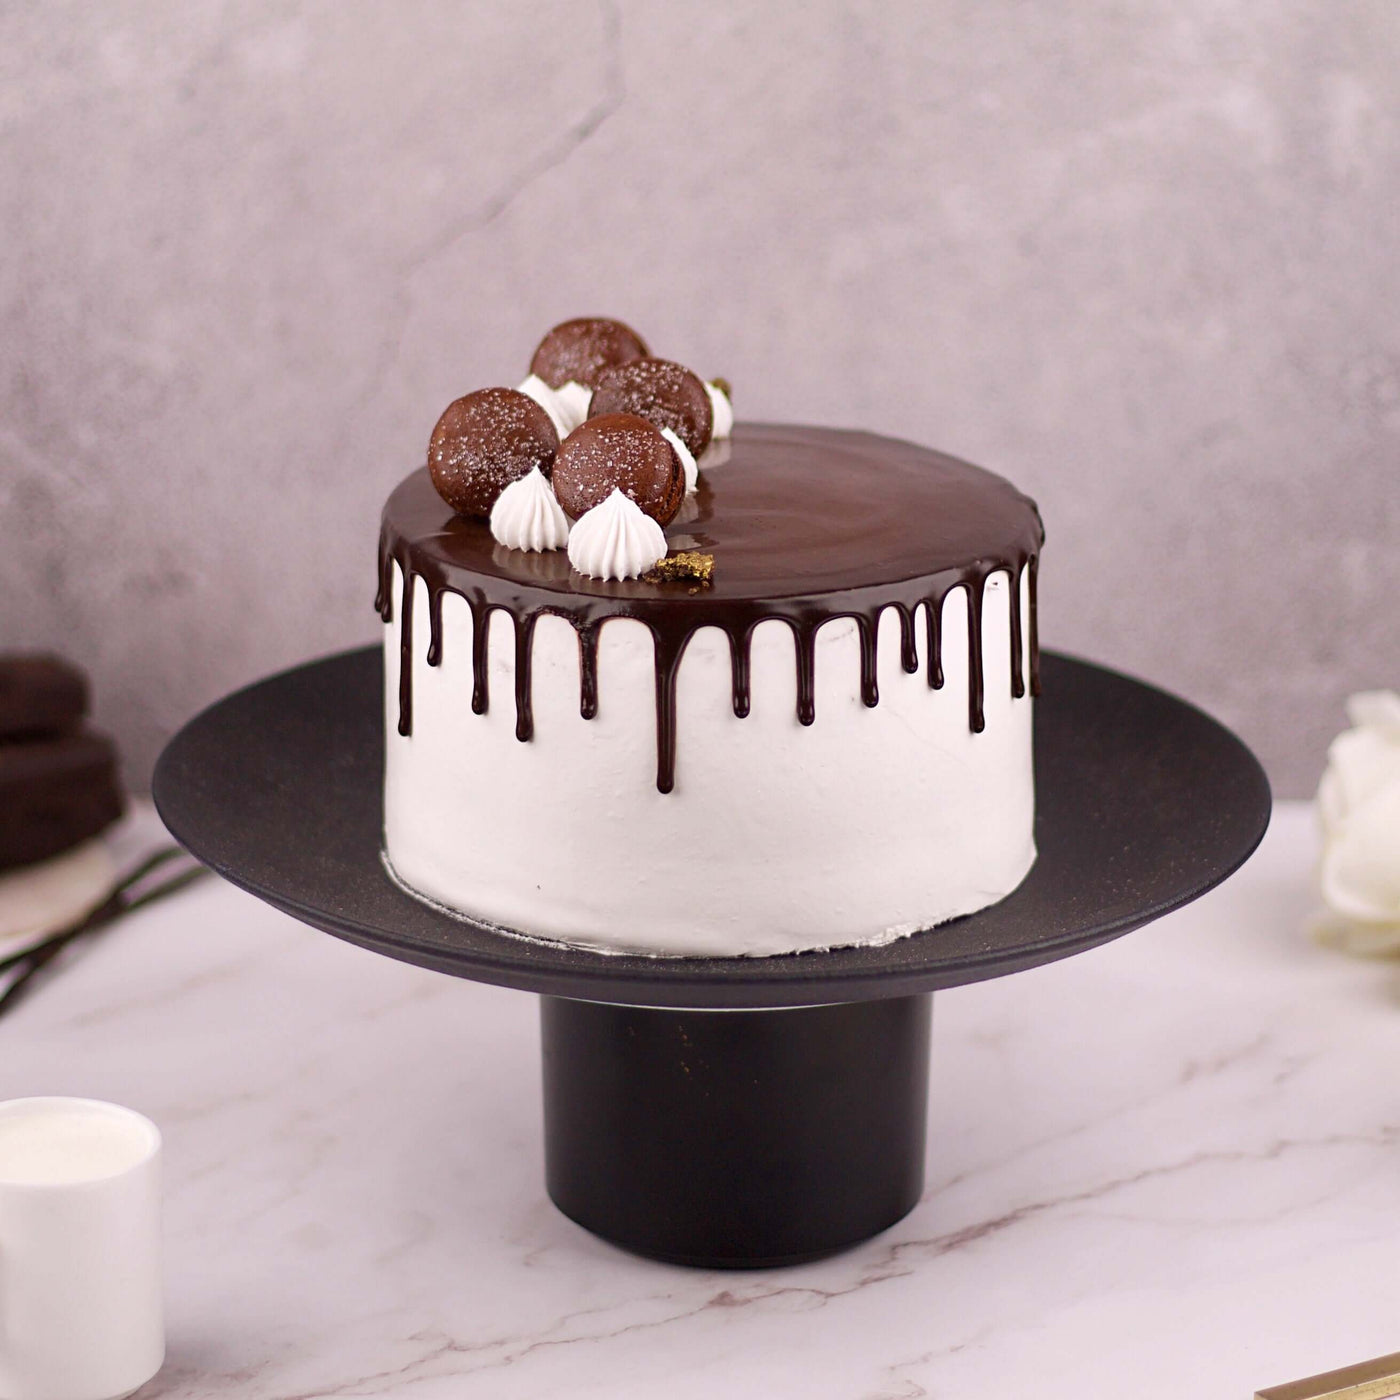 Choco Vanilla cake